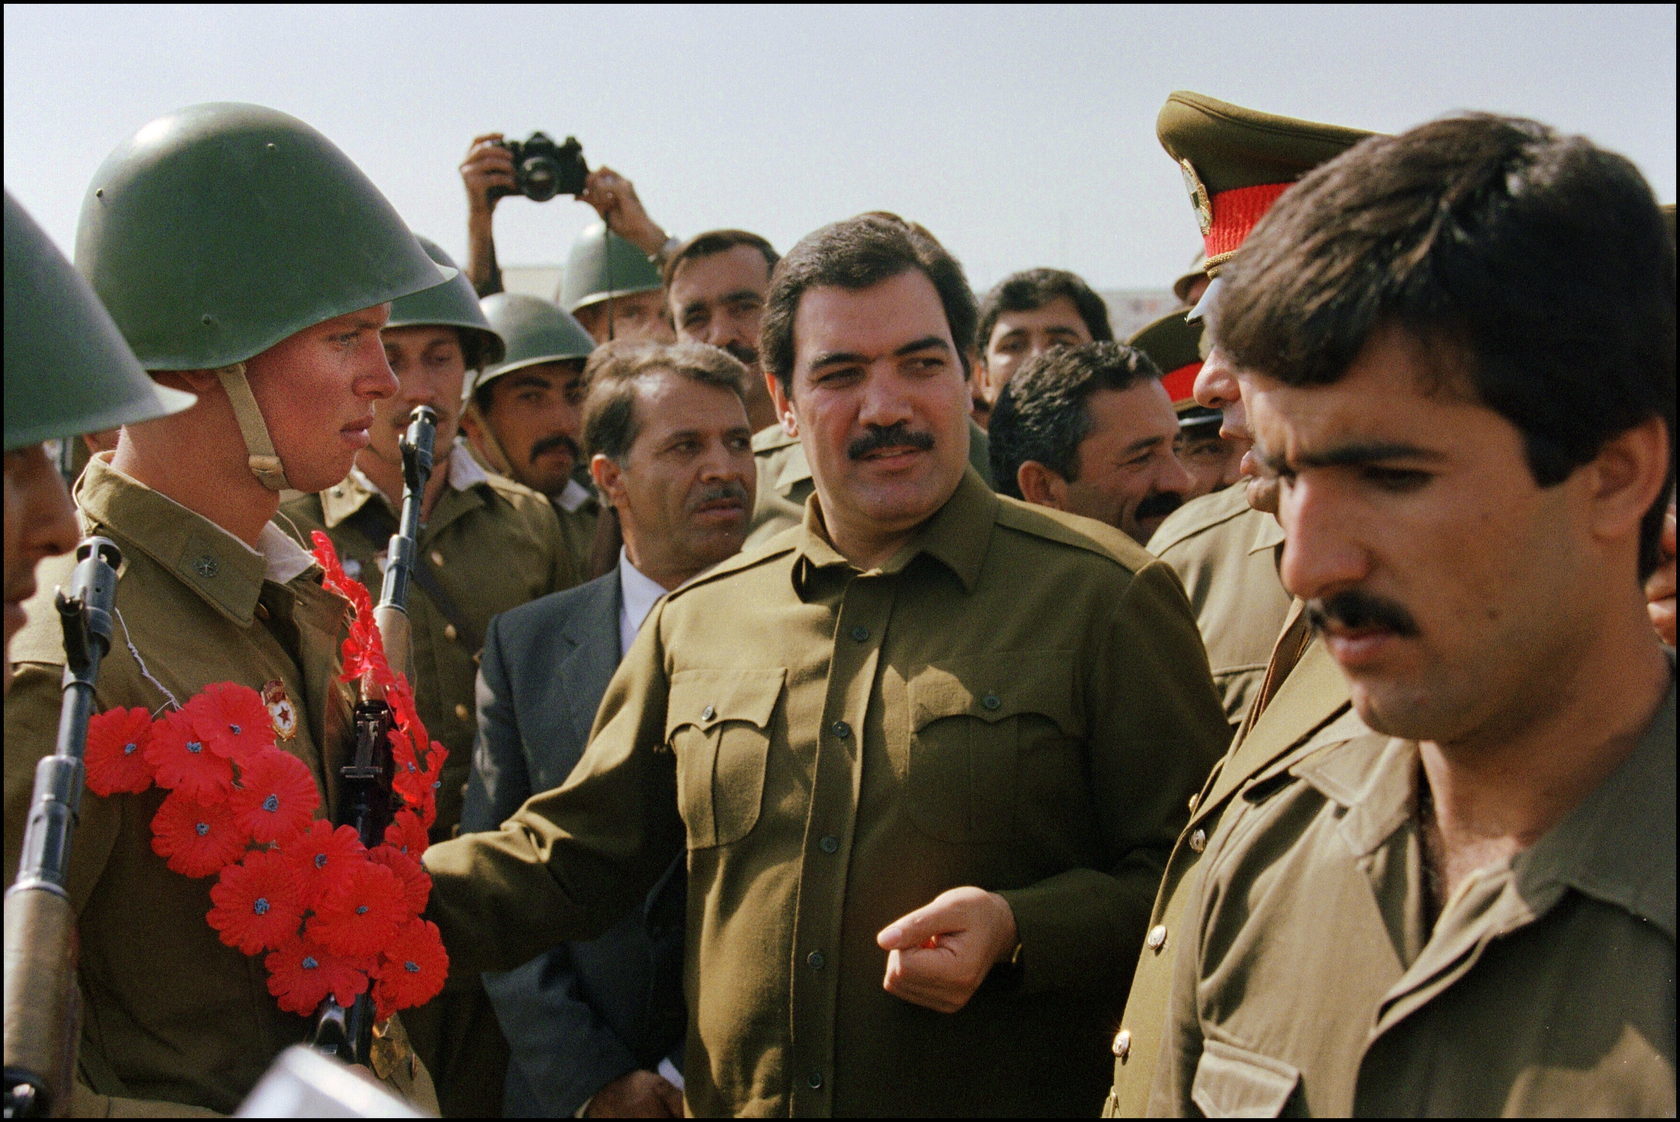 Afghanistan's president Mohammed Najibullah